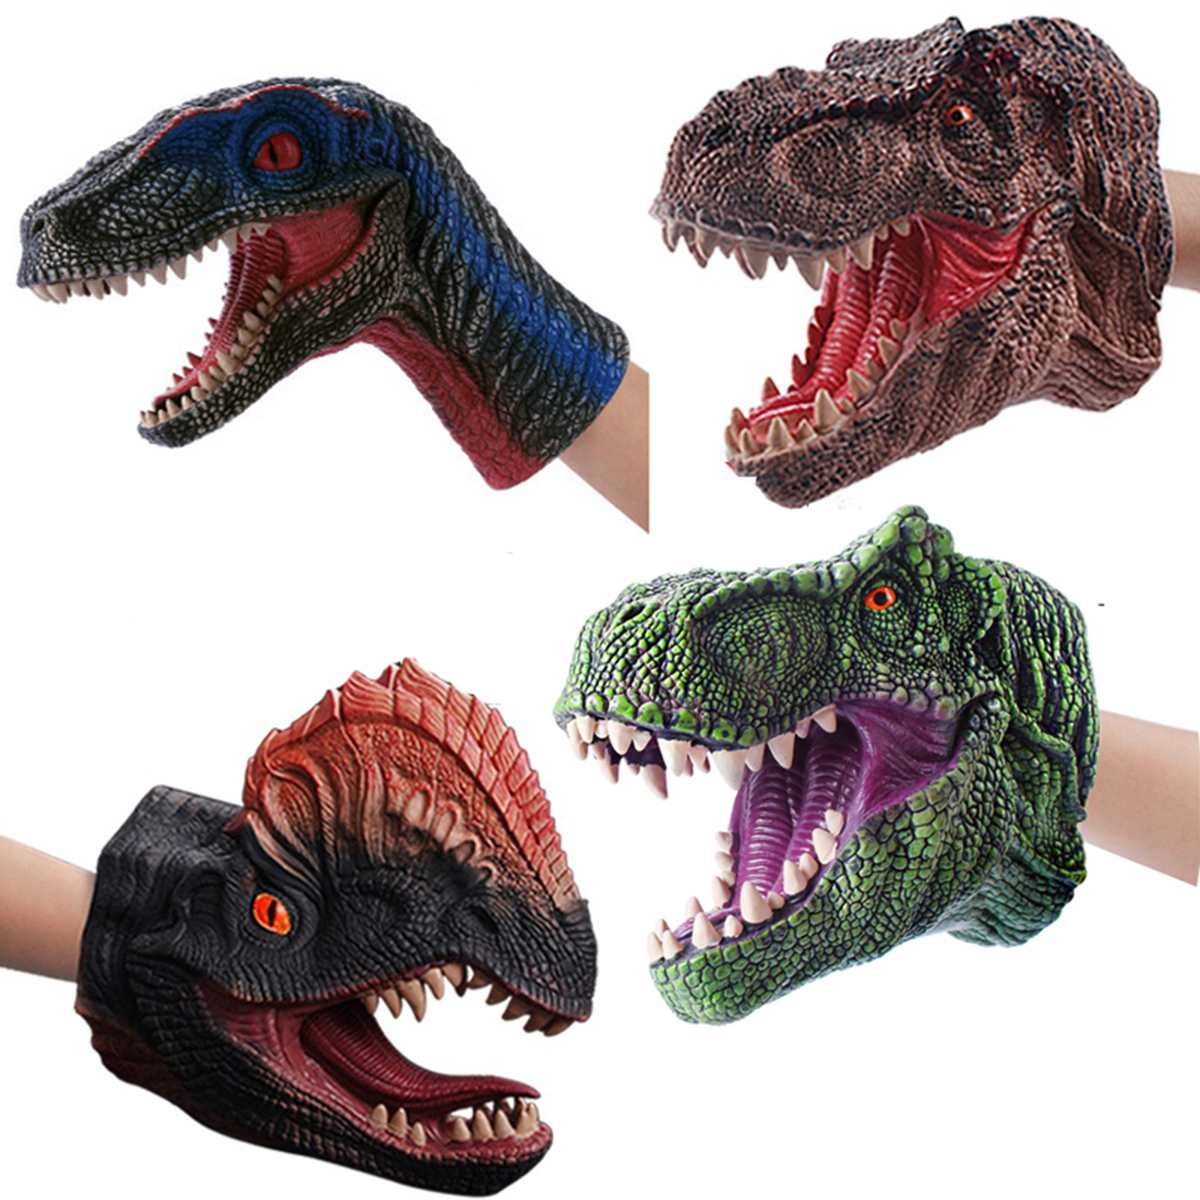 Dinosaur Hand Puppet Velociraptor Model Figure Children Toy Gift for Kids